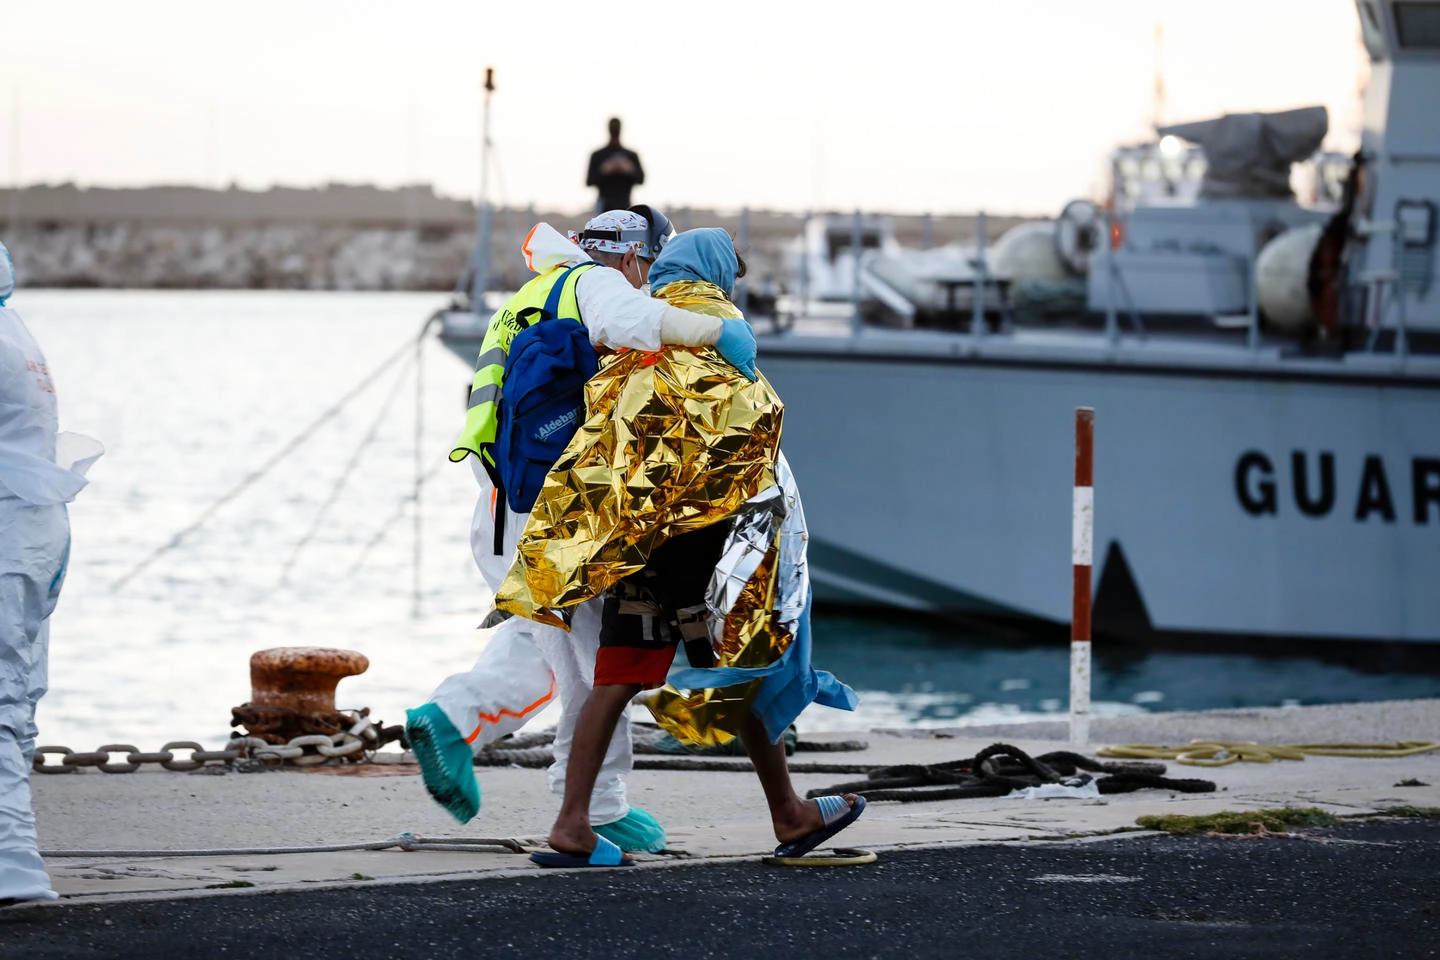 Accolti a Pozzallo i superstiti del naufragio al largo della Libia (Ansa)